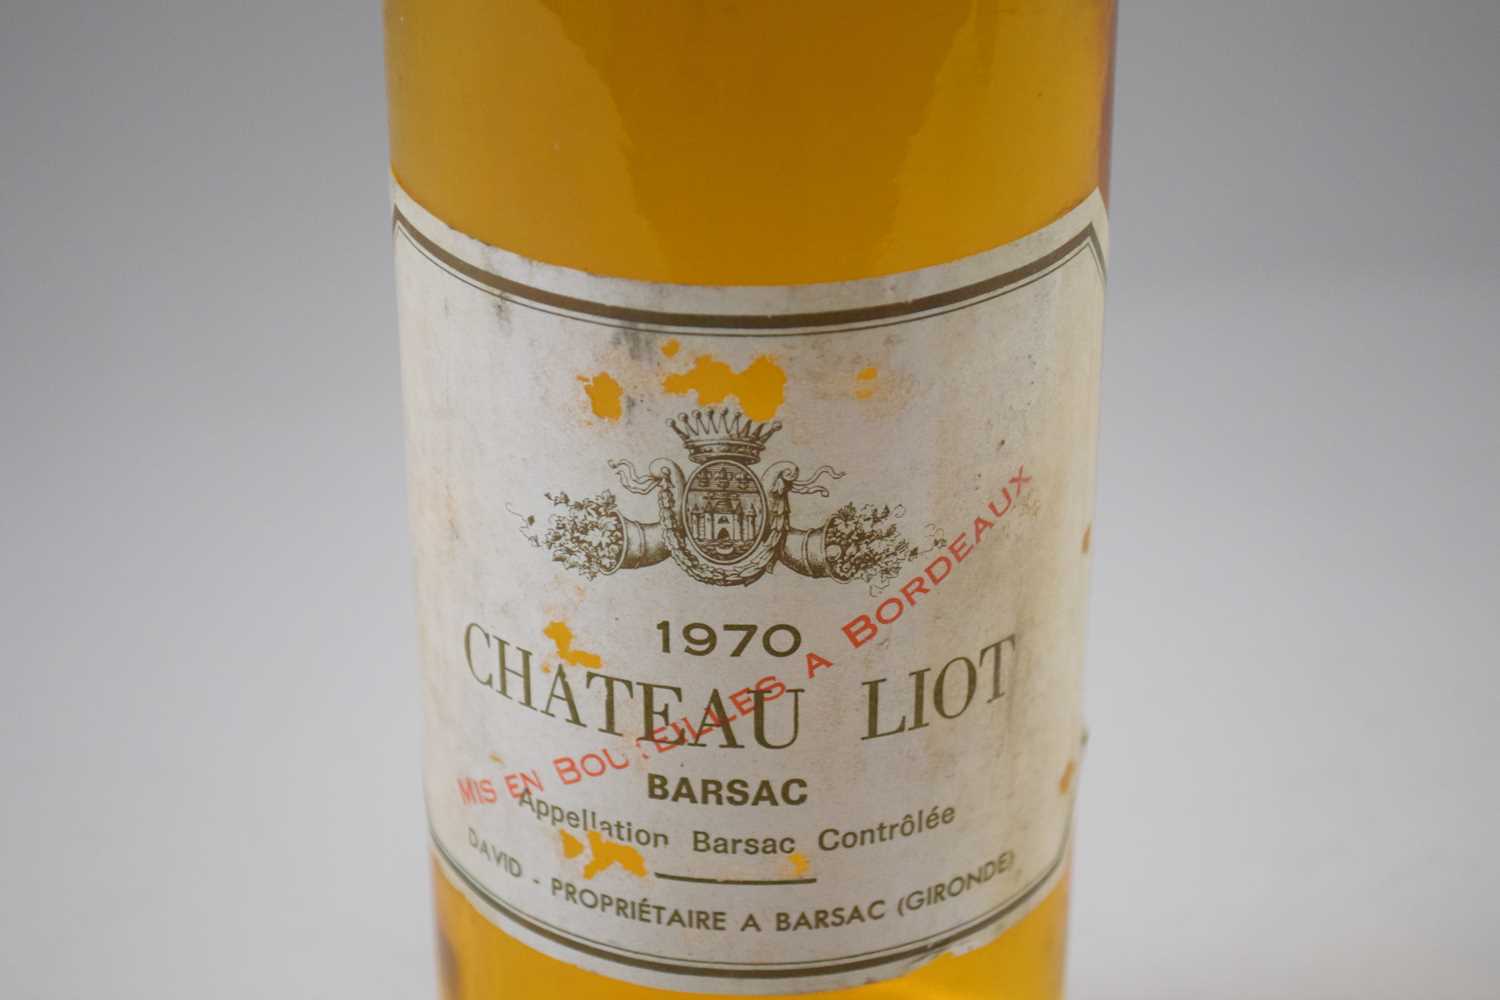 1970 Chateau Liot, Sauternes, 1 bottle - Image 2 of 3